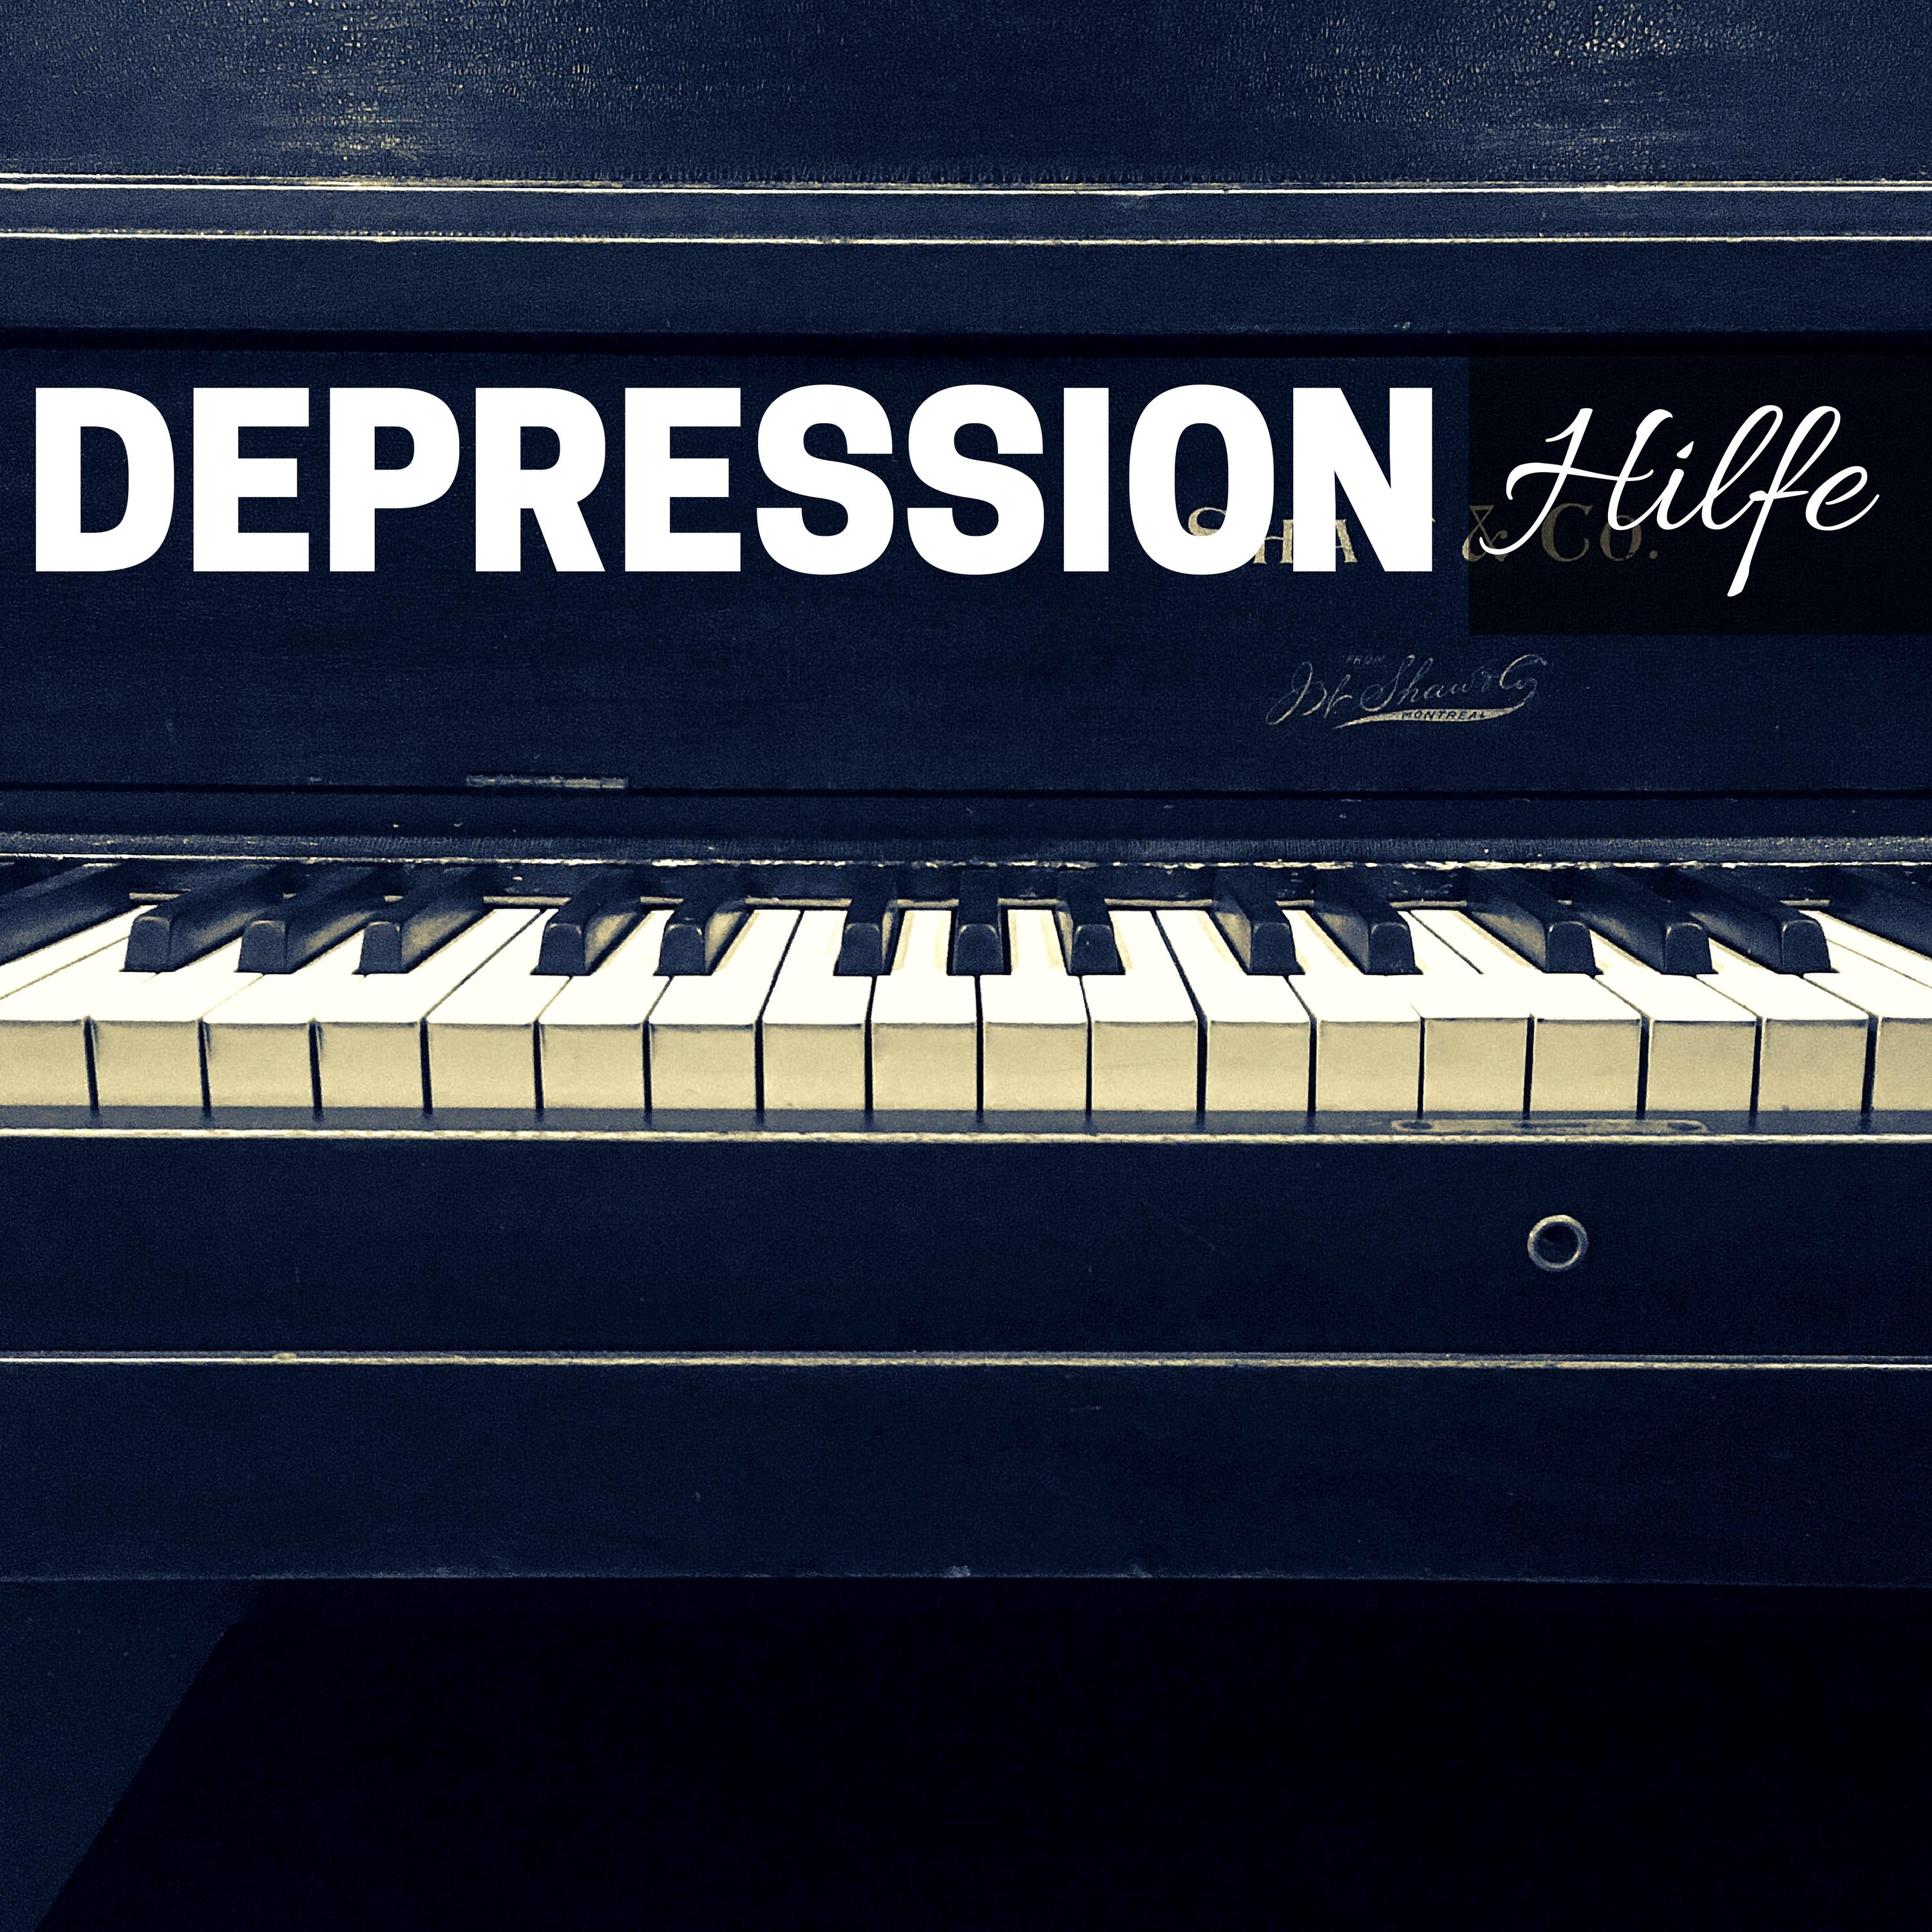 Depression Hilfe - Klaviermusik zum Entspannen, Entspannung und Gute Energie